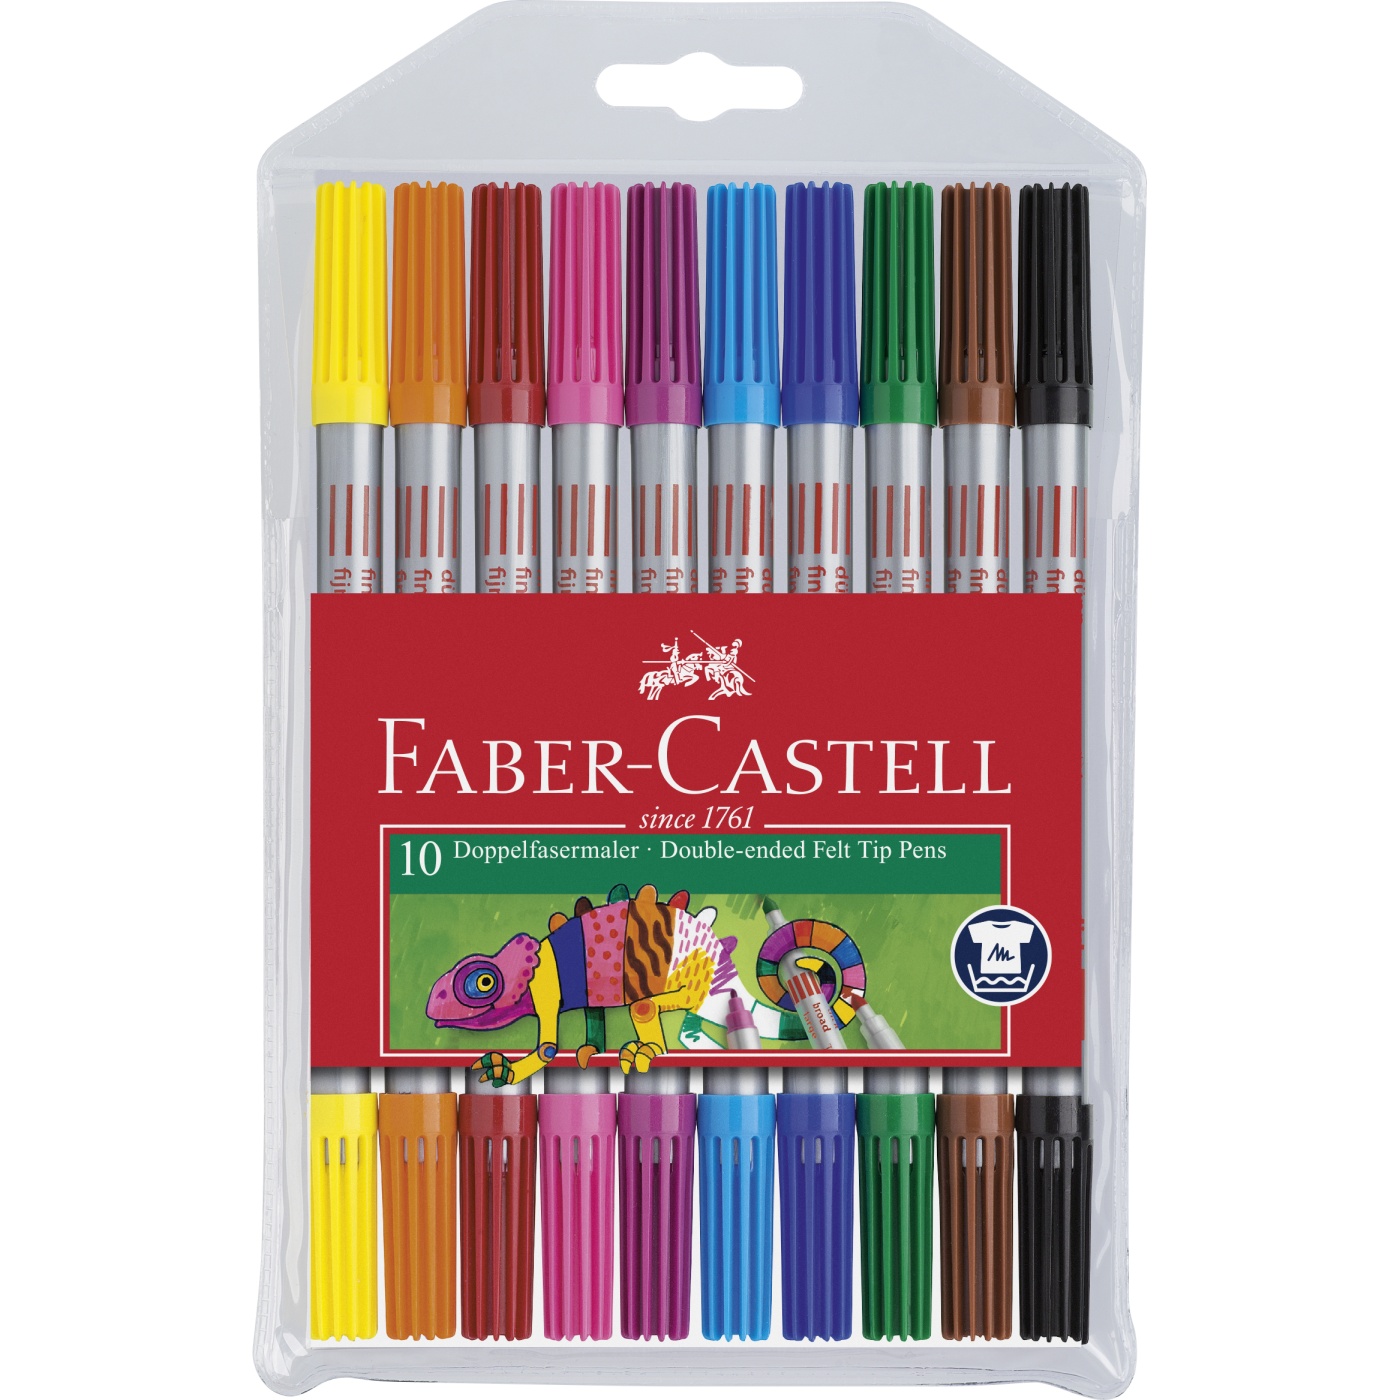 Faber-castell feutres connector avec coloriages